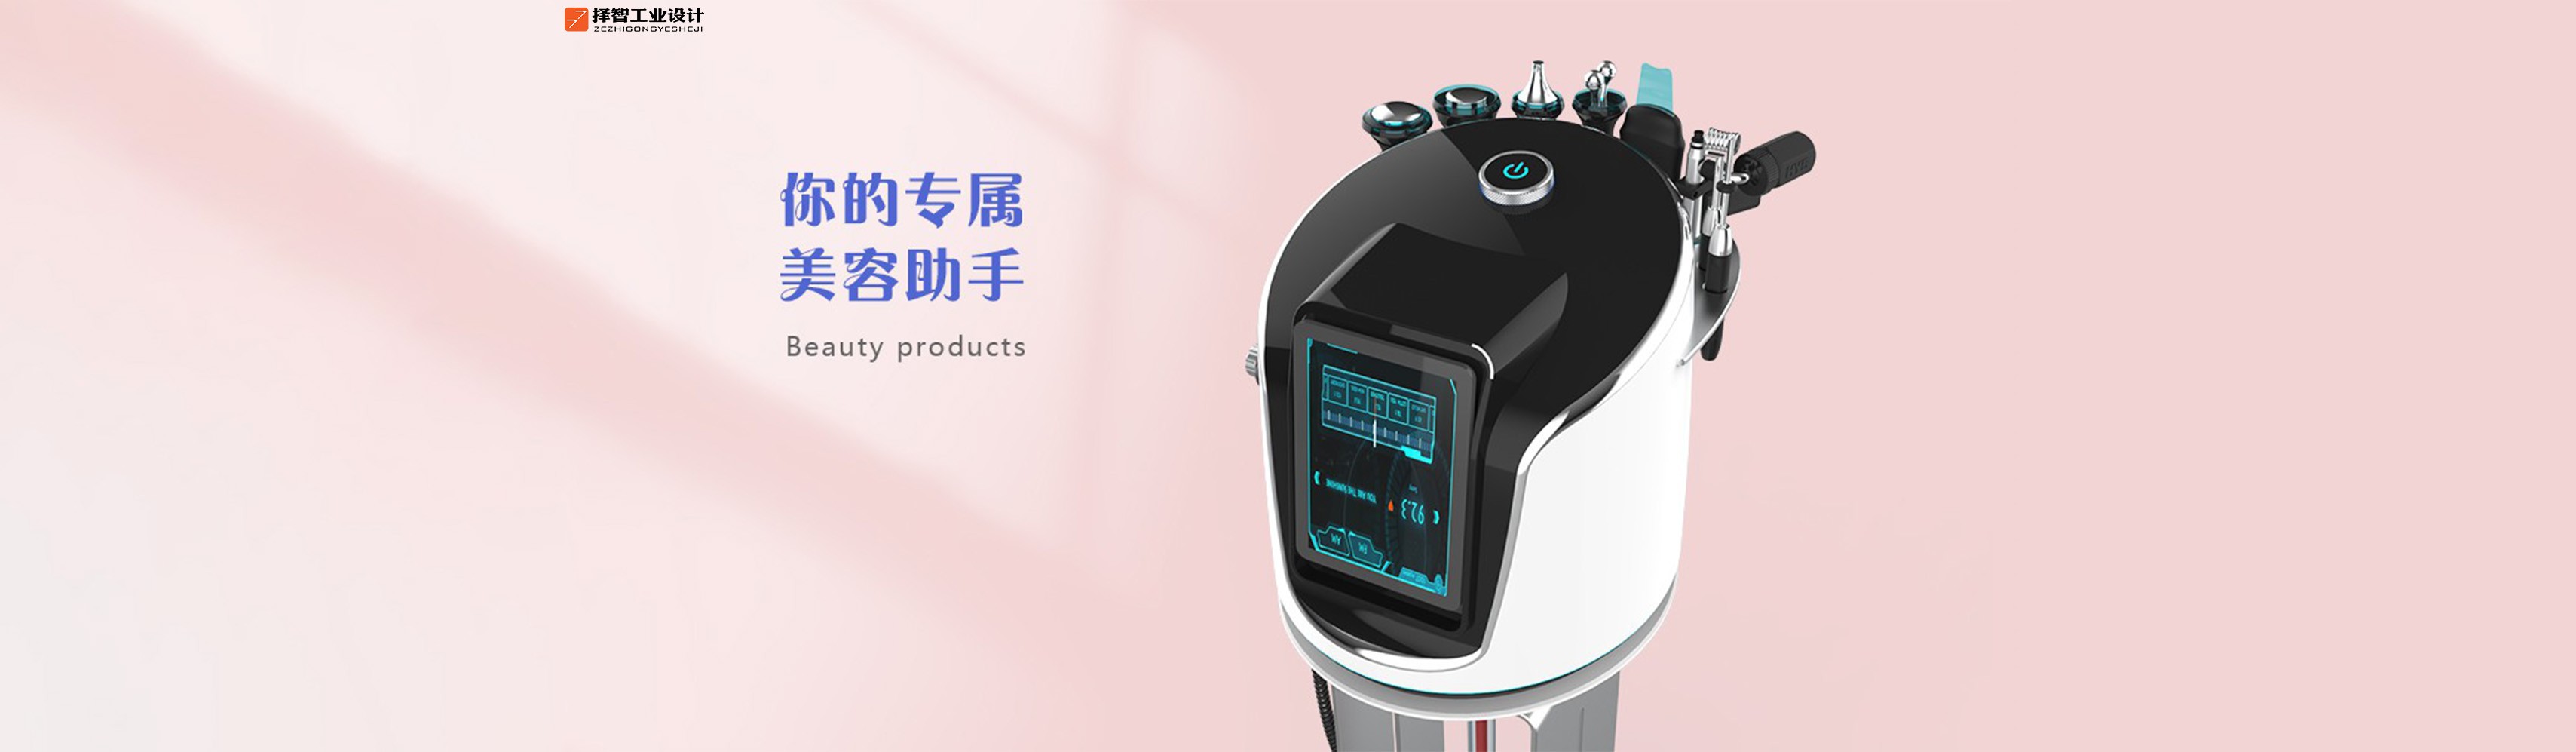 上海苏州产品设计 工业产品外观设计 结构设计 医疗美容仪产品设计